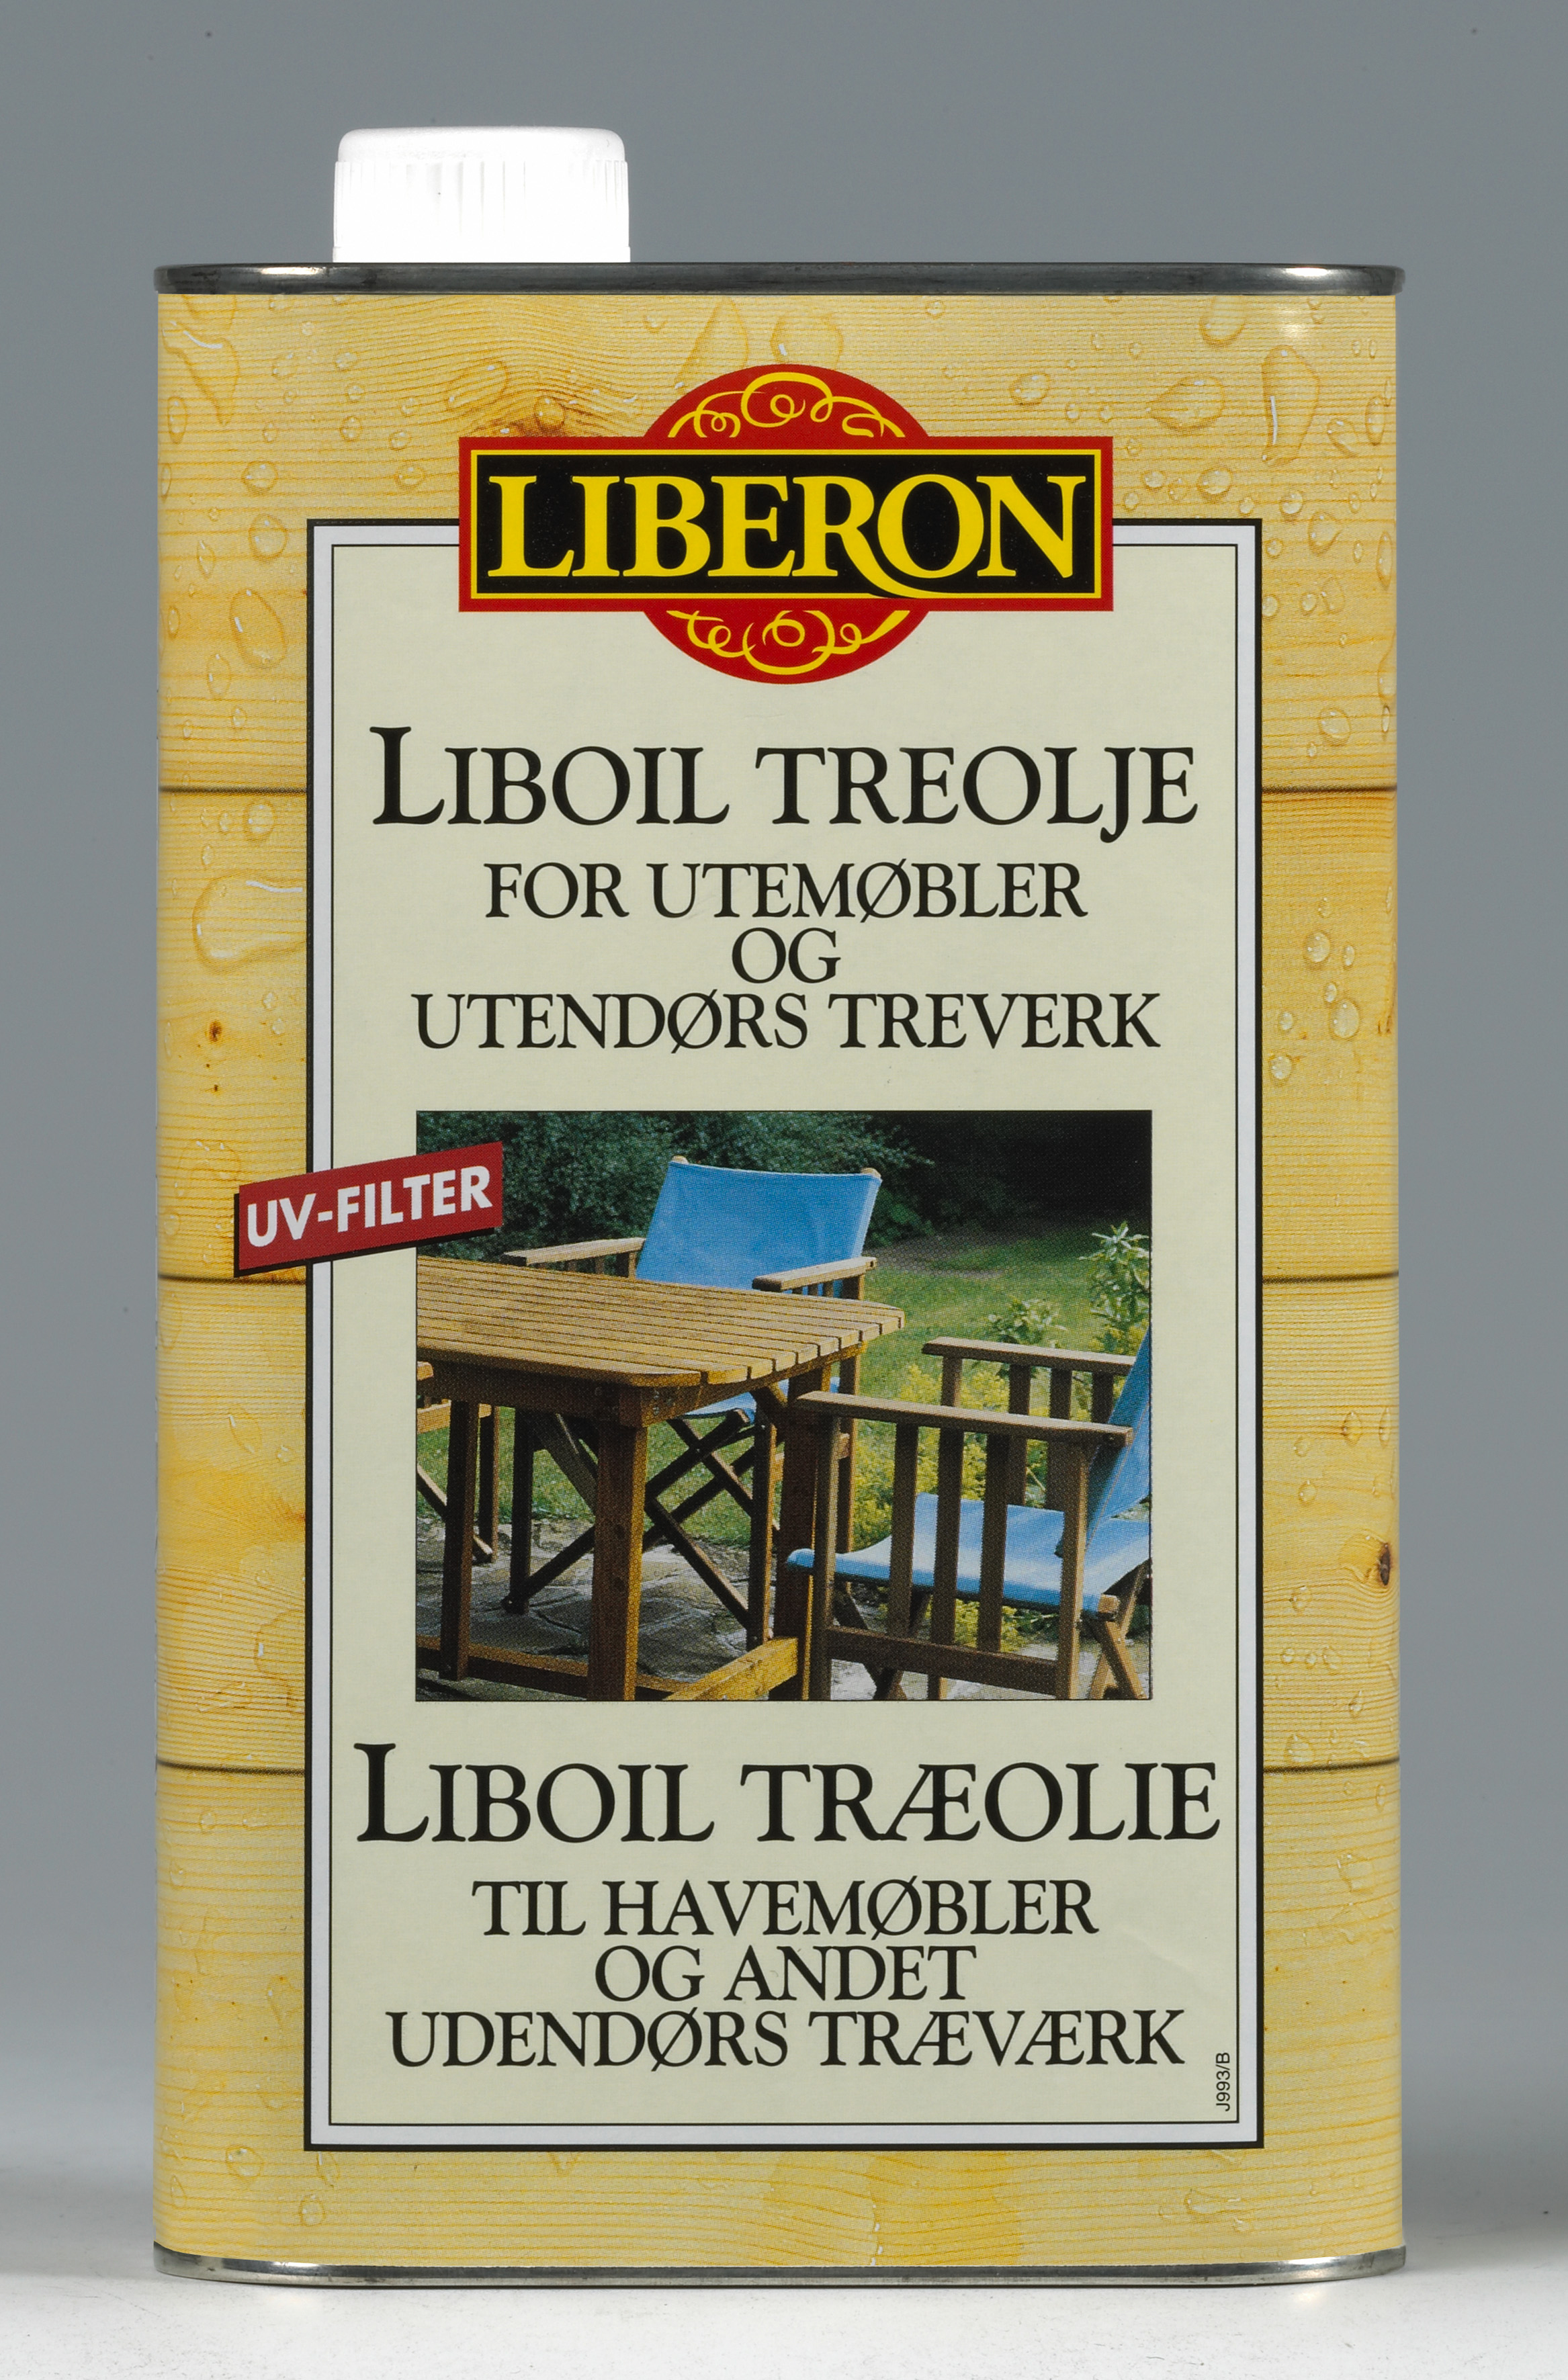 Liberon Liboil treolje for utendørs bruk